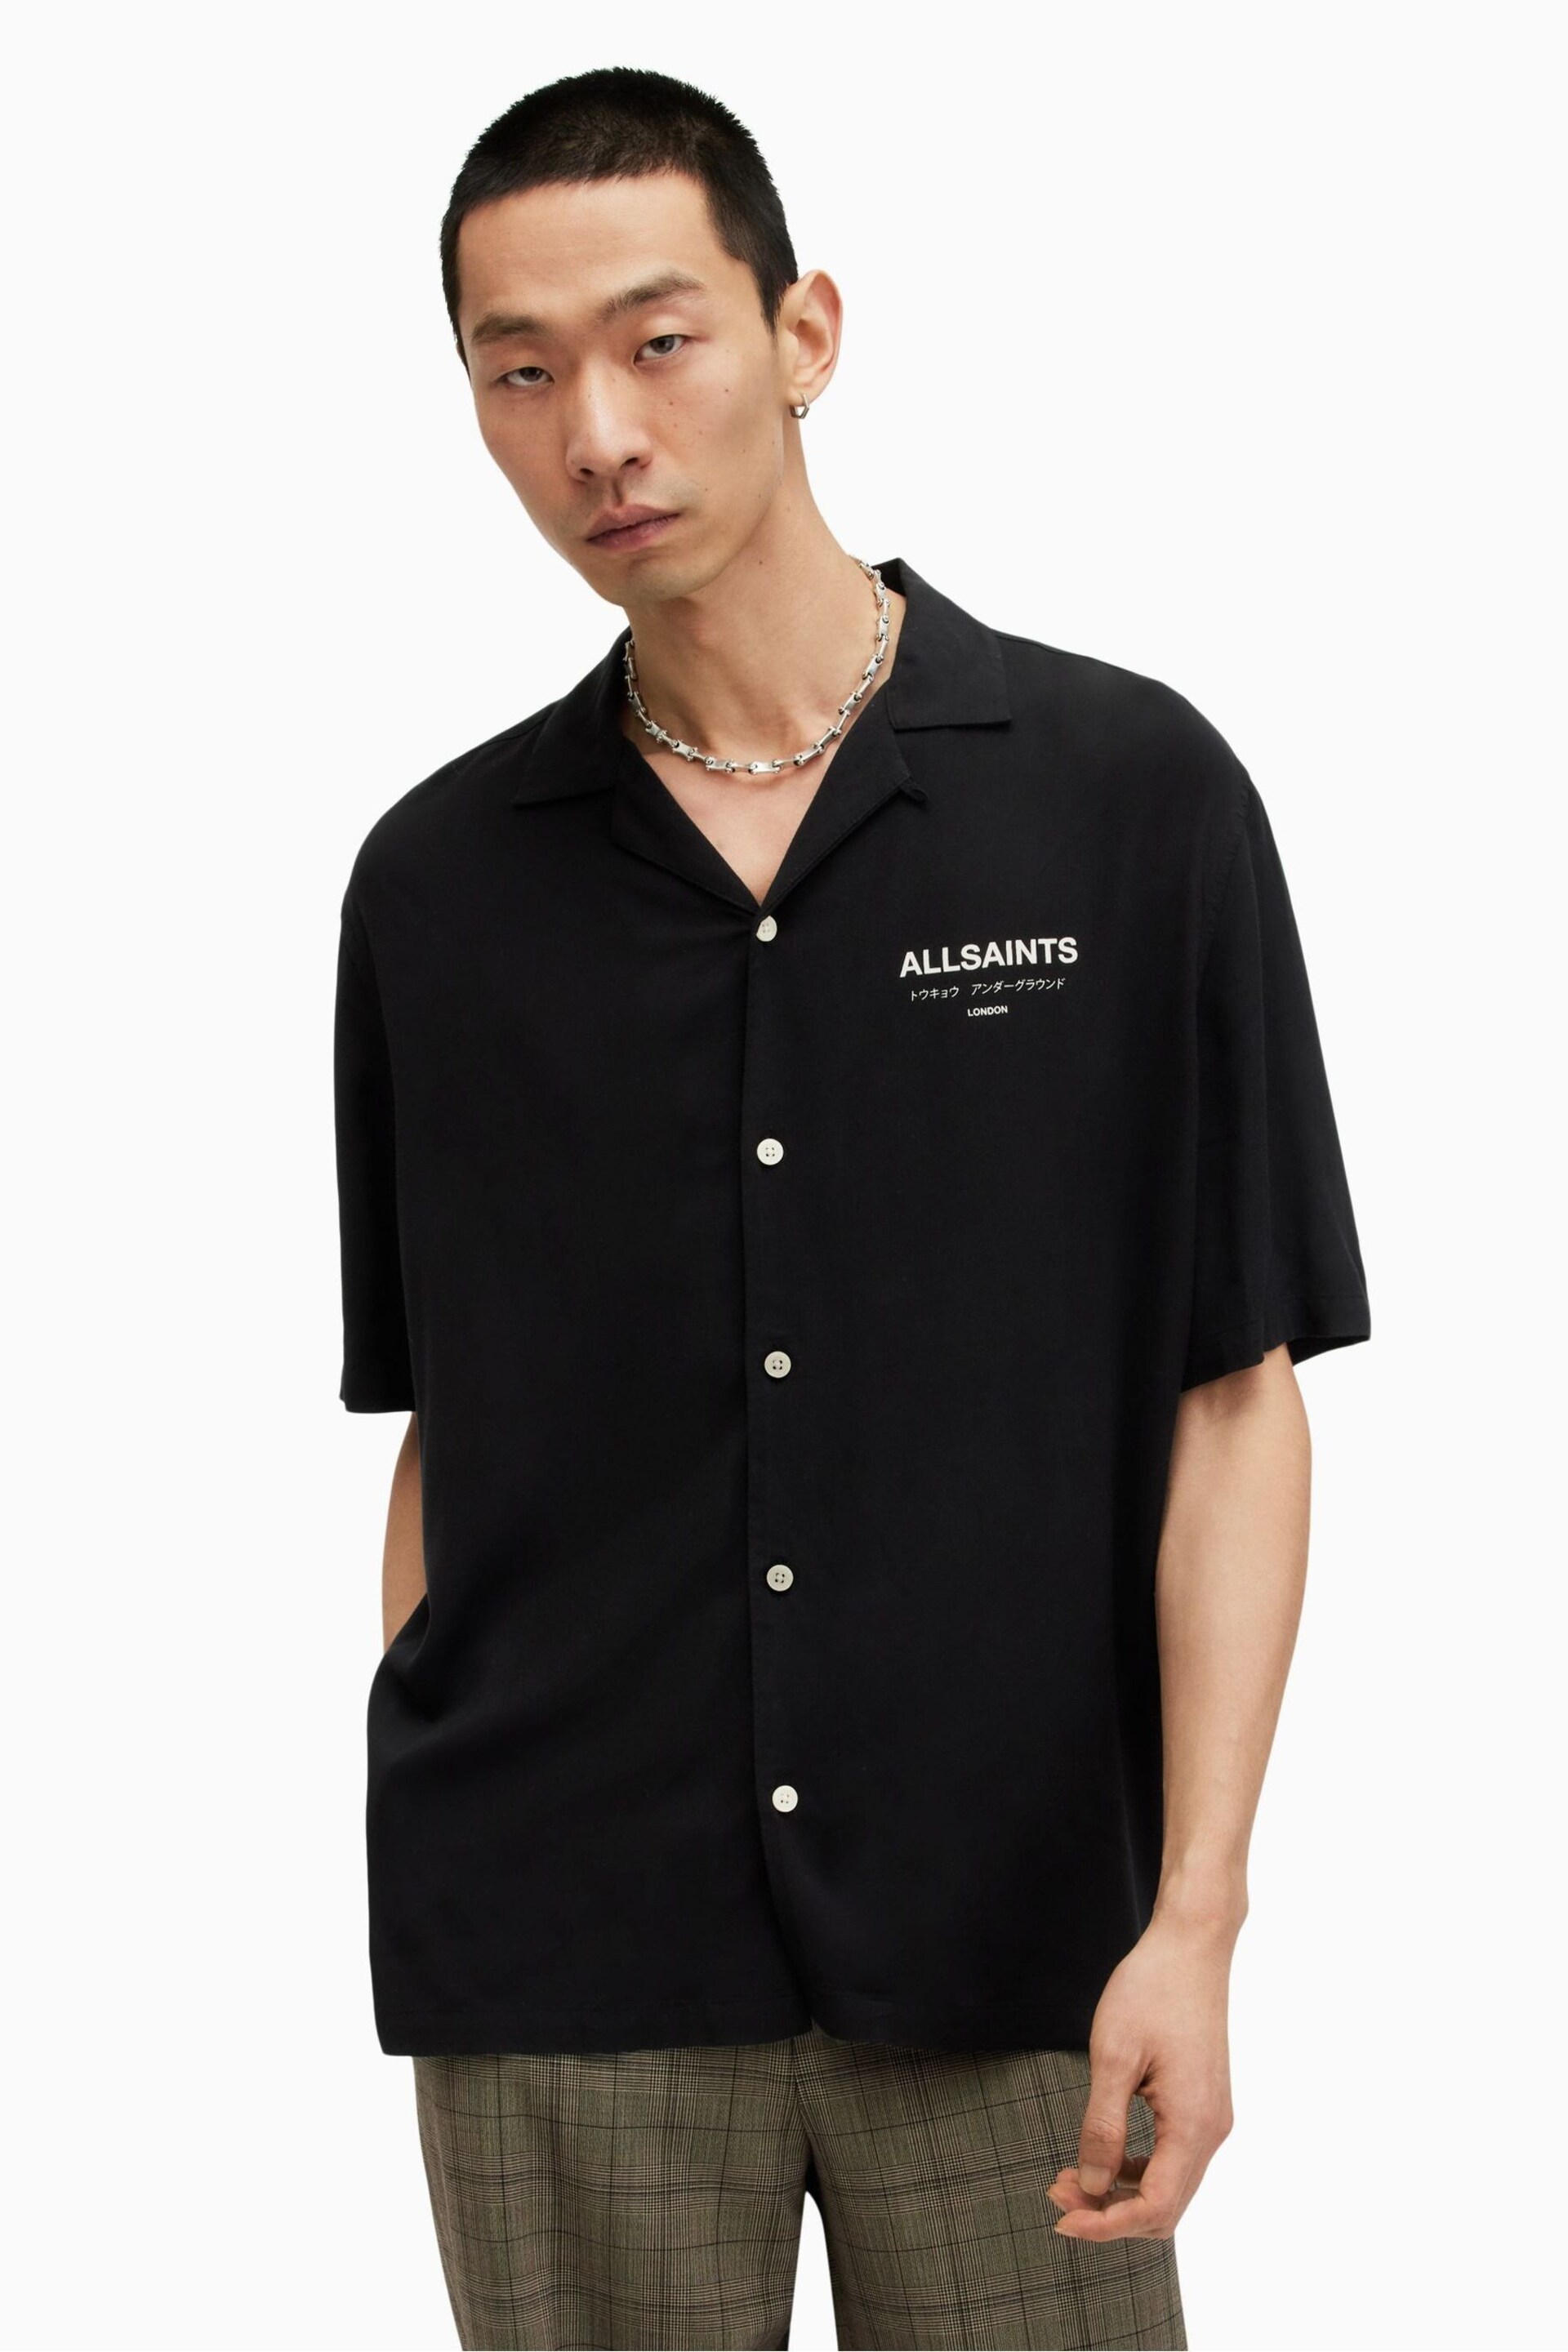 AllSaints Black Underground Short Sleeve Shirt - Image 1 of 7